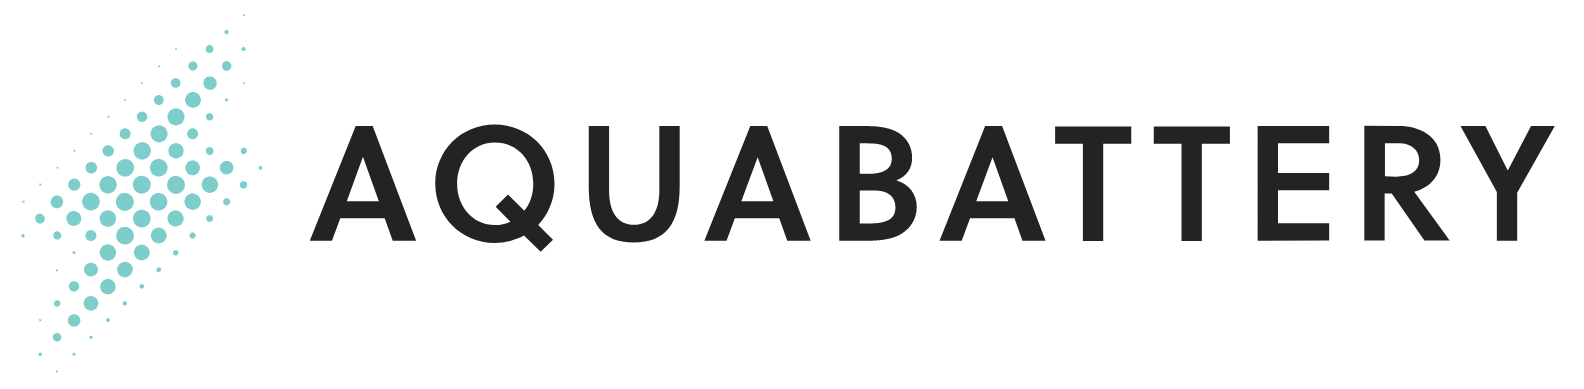 Logo_AB